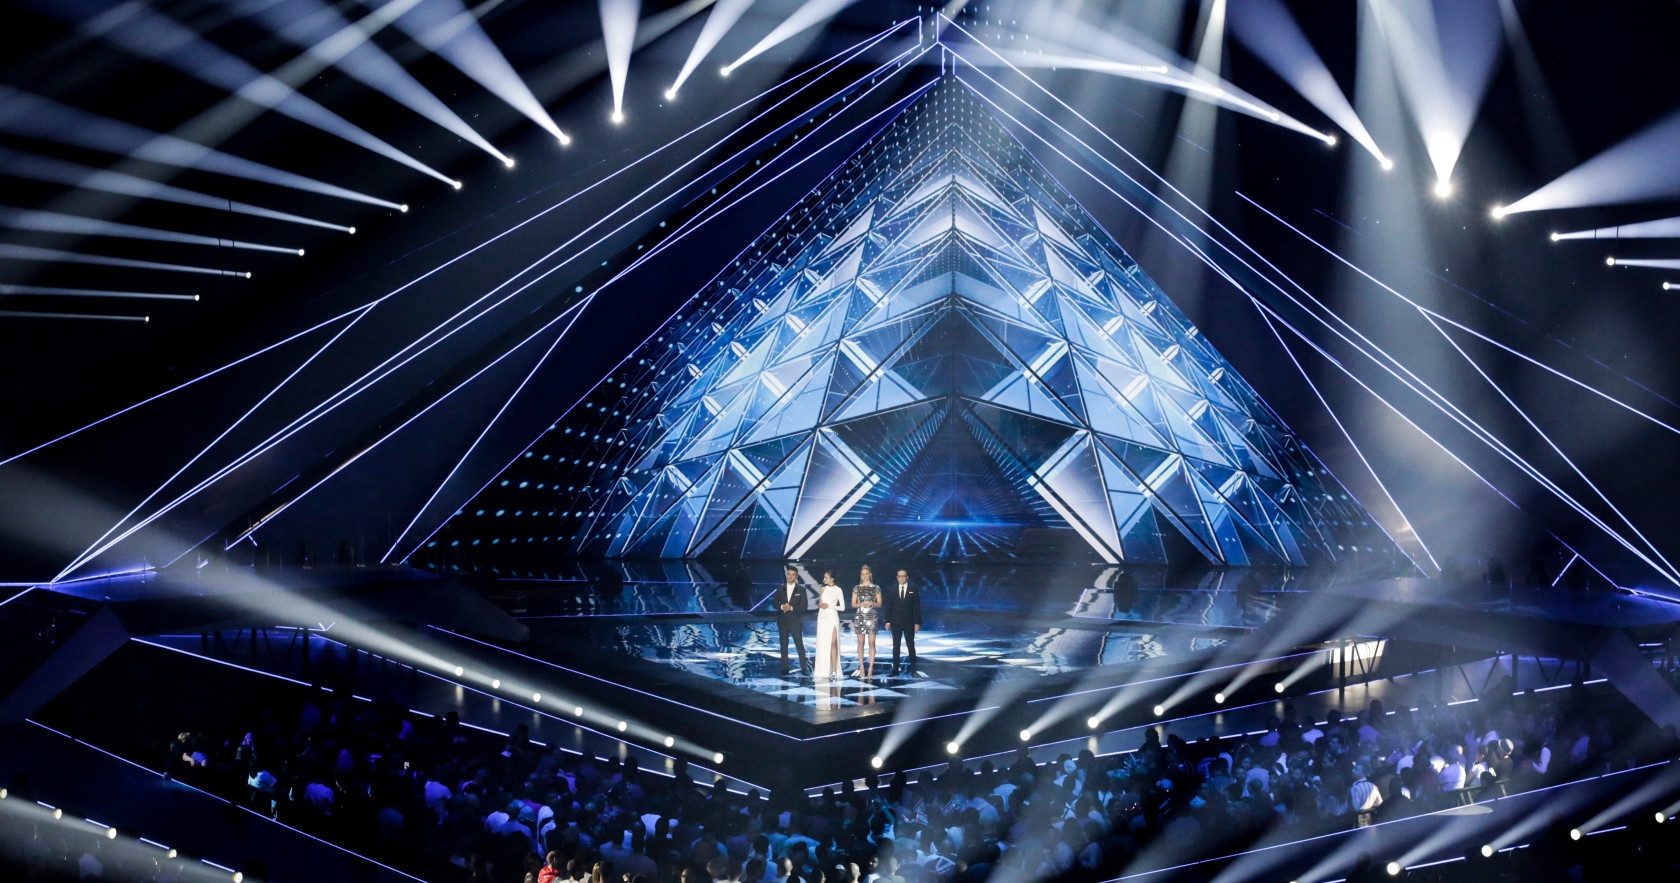 Eurovision 2019